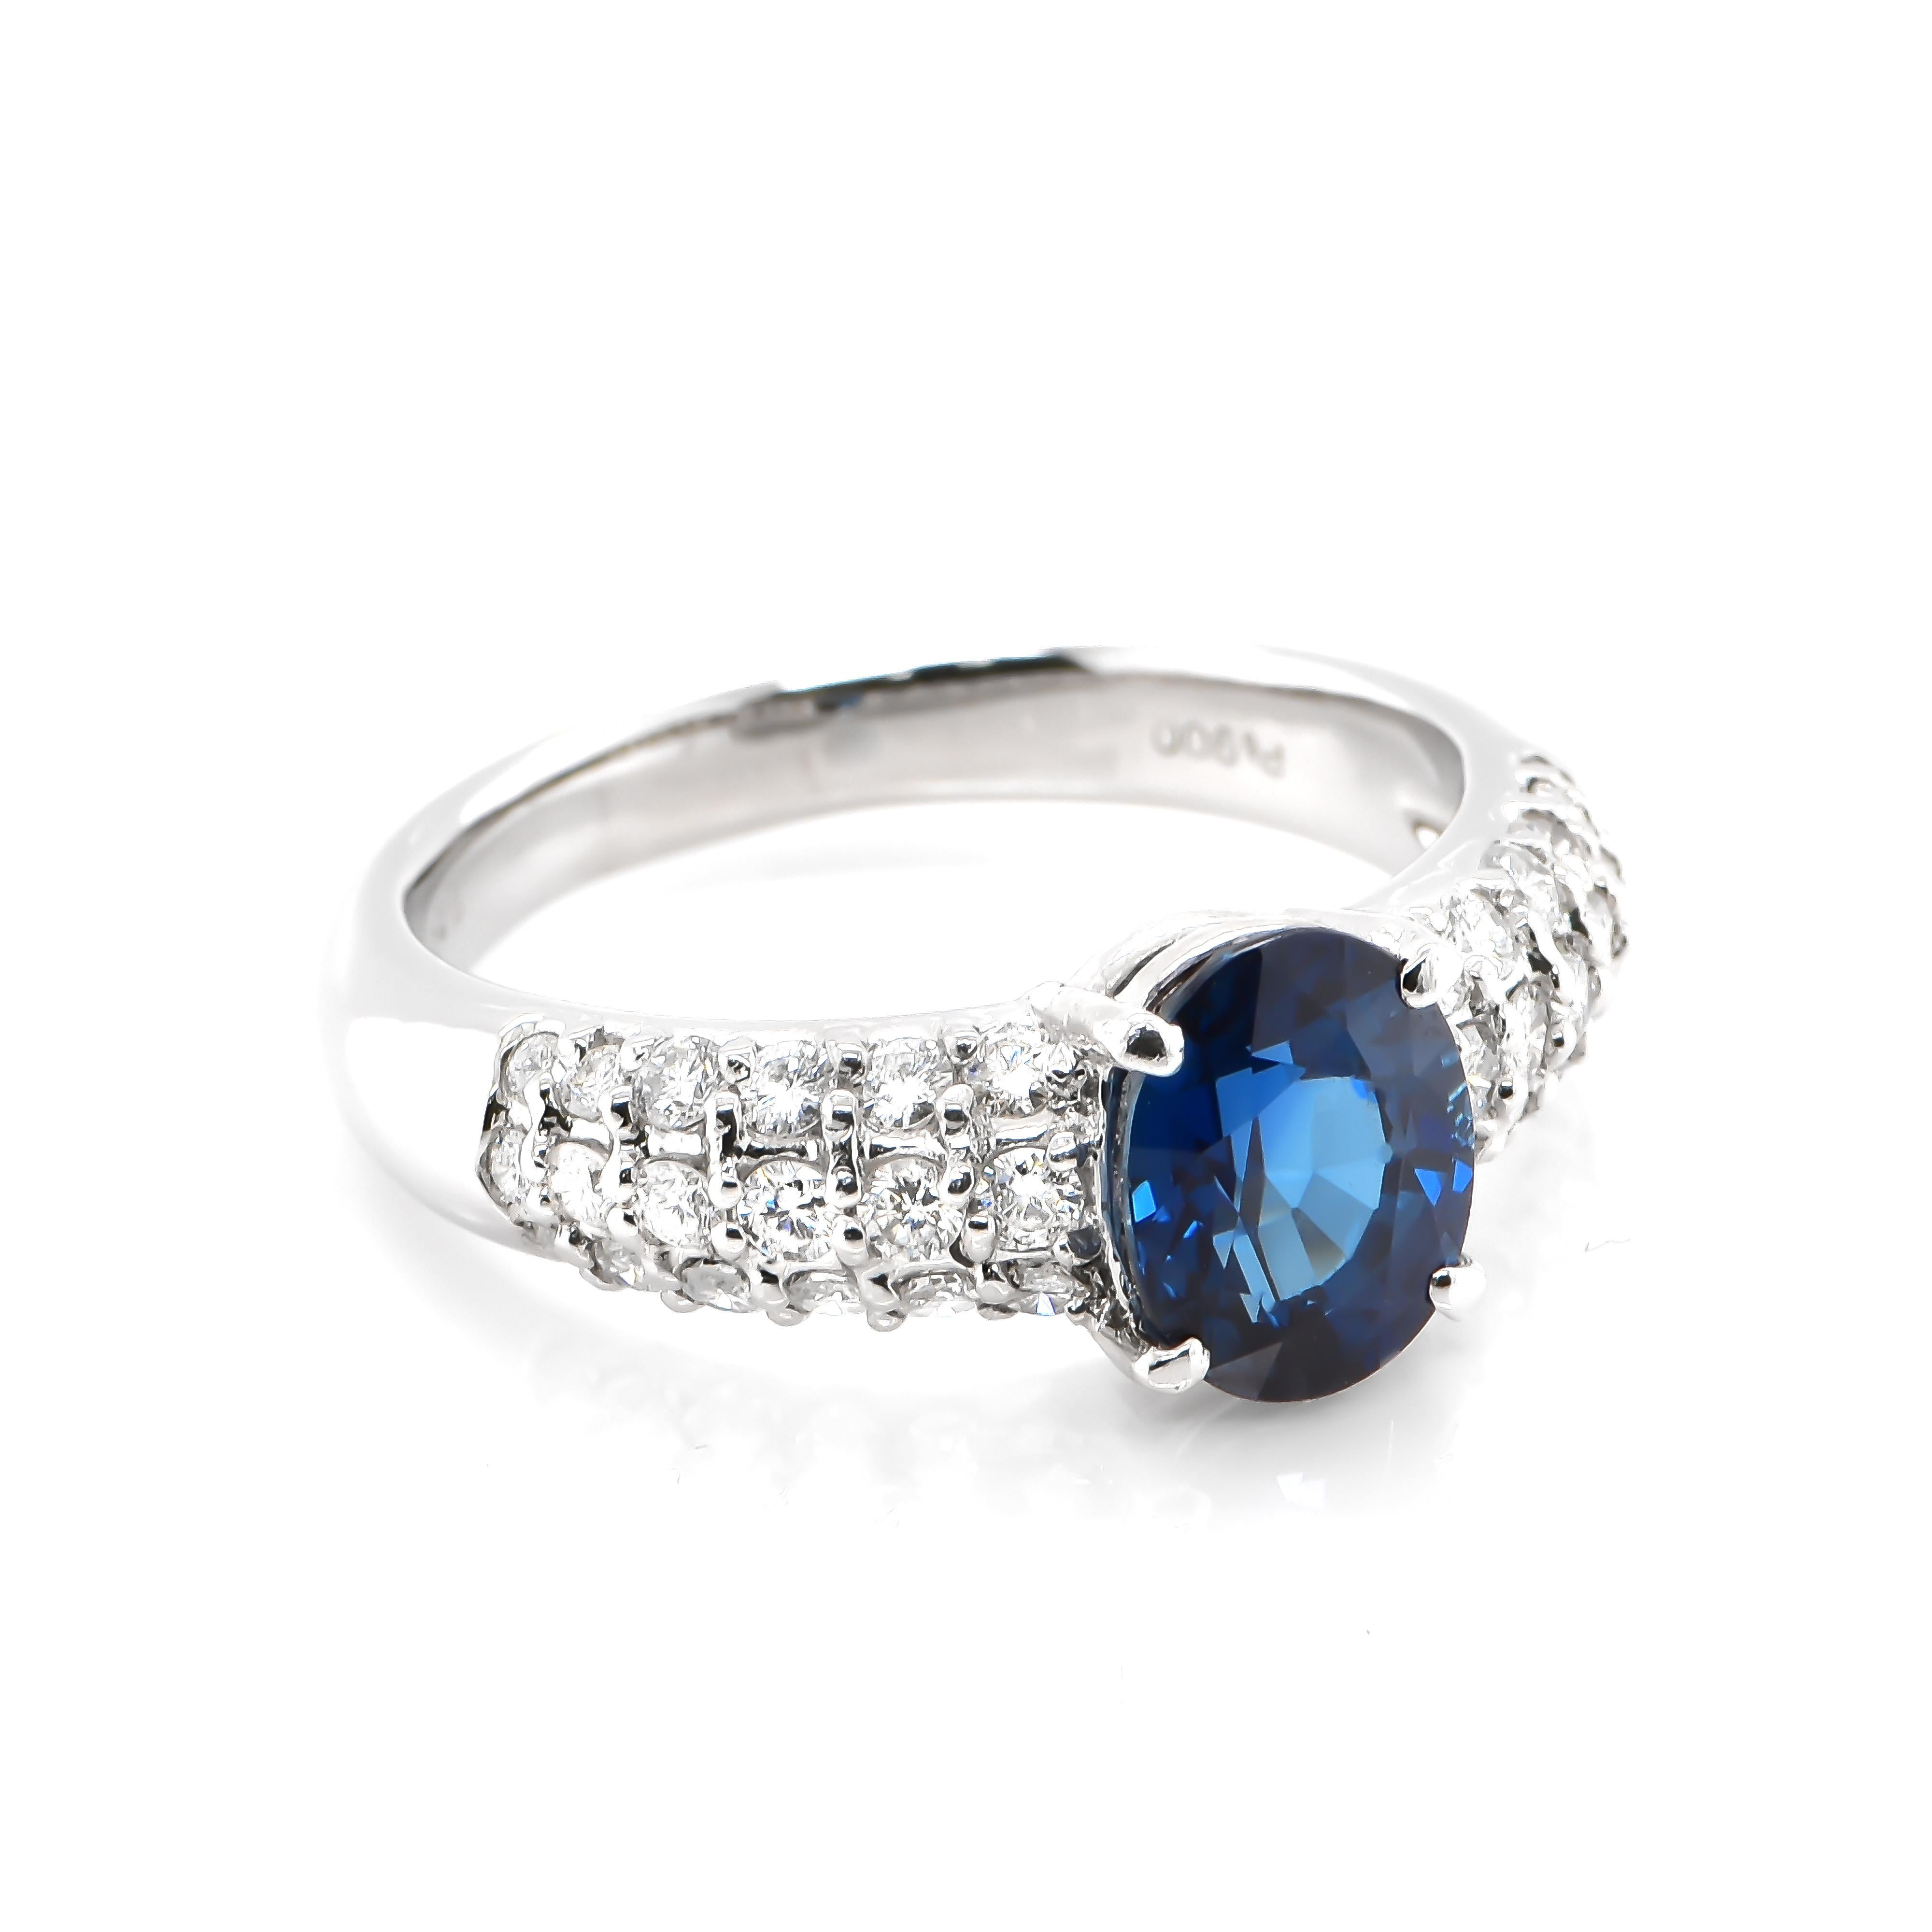 Cette magnifique bague est ornée d'un saphir bleu royal naturel de 2,25 carats et de diamants de 0,69 carats sertis dans du platine. Les saphirs ont une durabilité extraordinaire - ils excellent en termes de dureté ainsi que de résistance et de